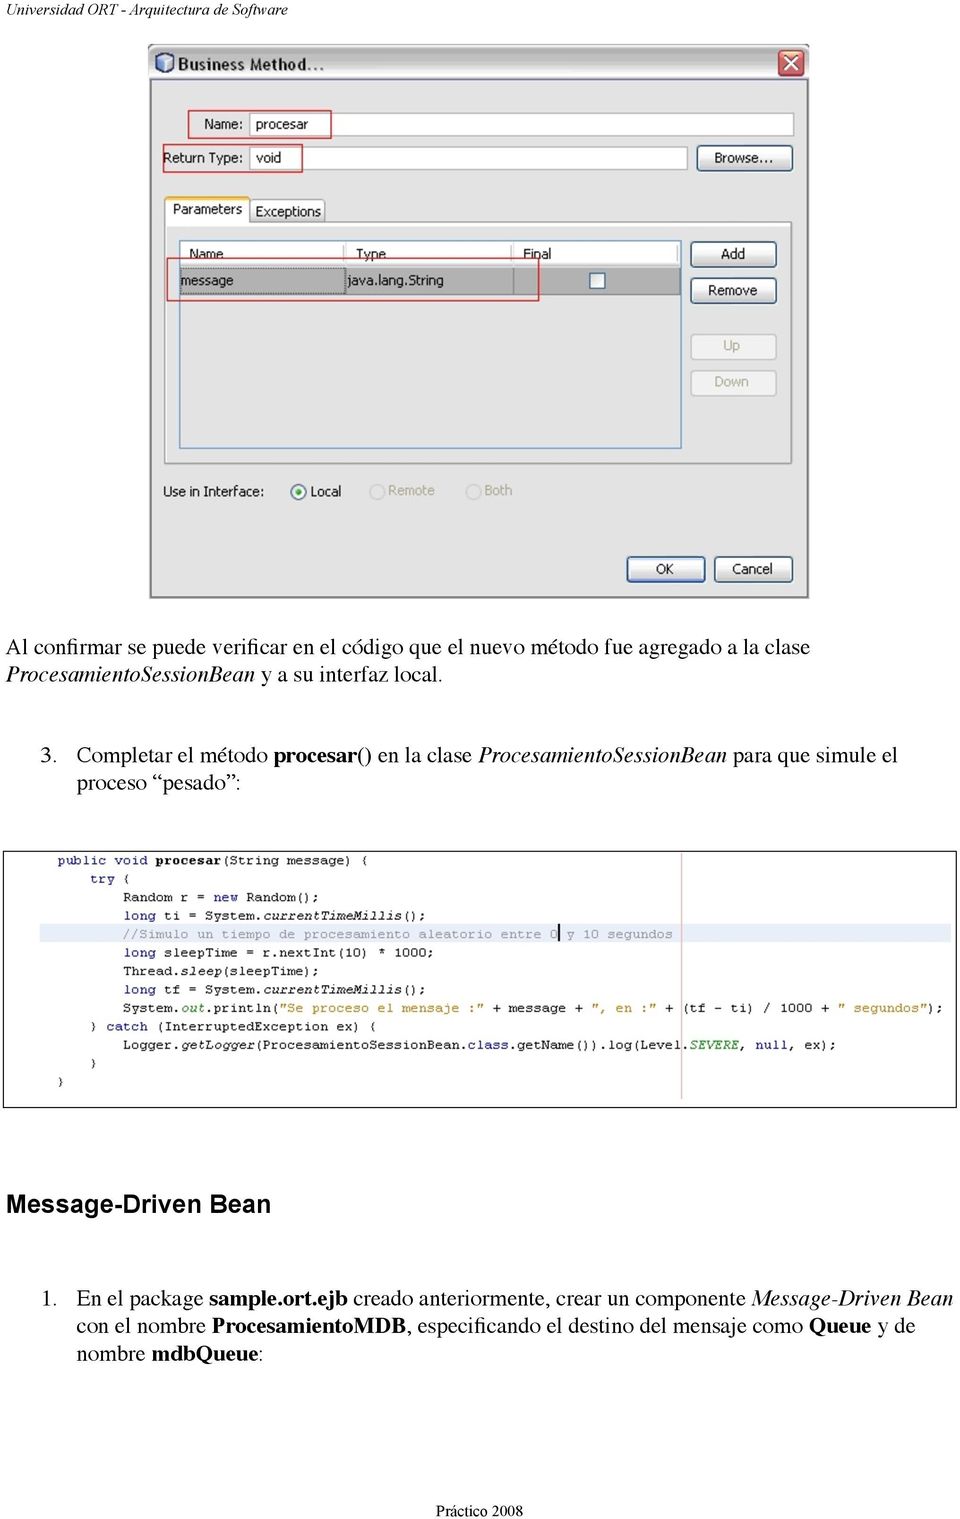 Completar el método procesar() en la clase ProcesamientoSessionBean para que simule el proceso pesado :